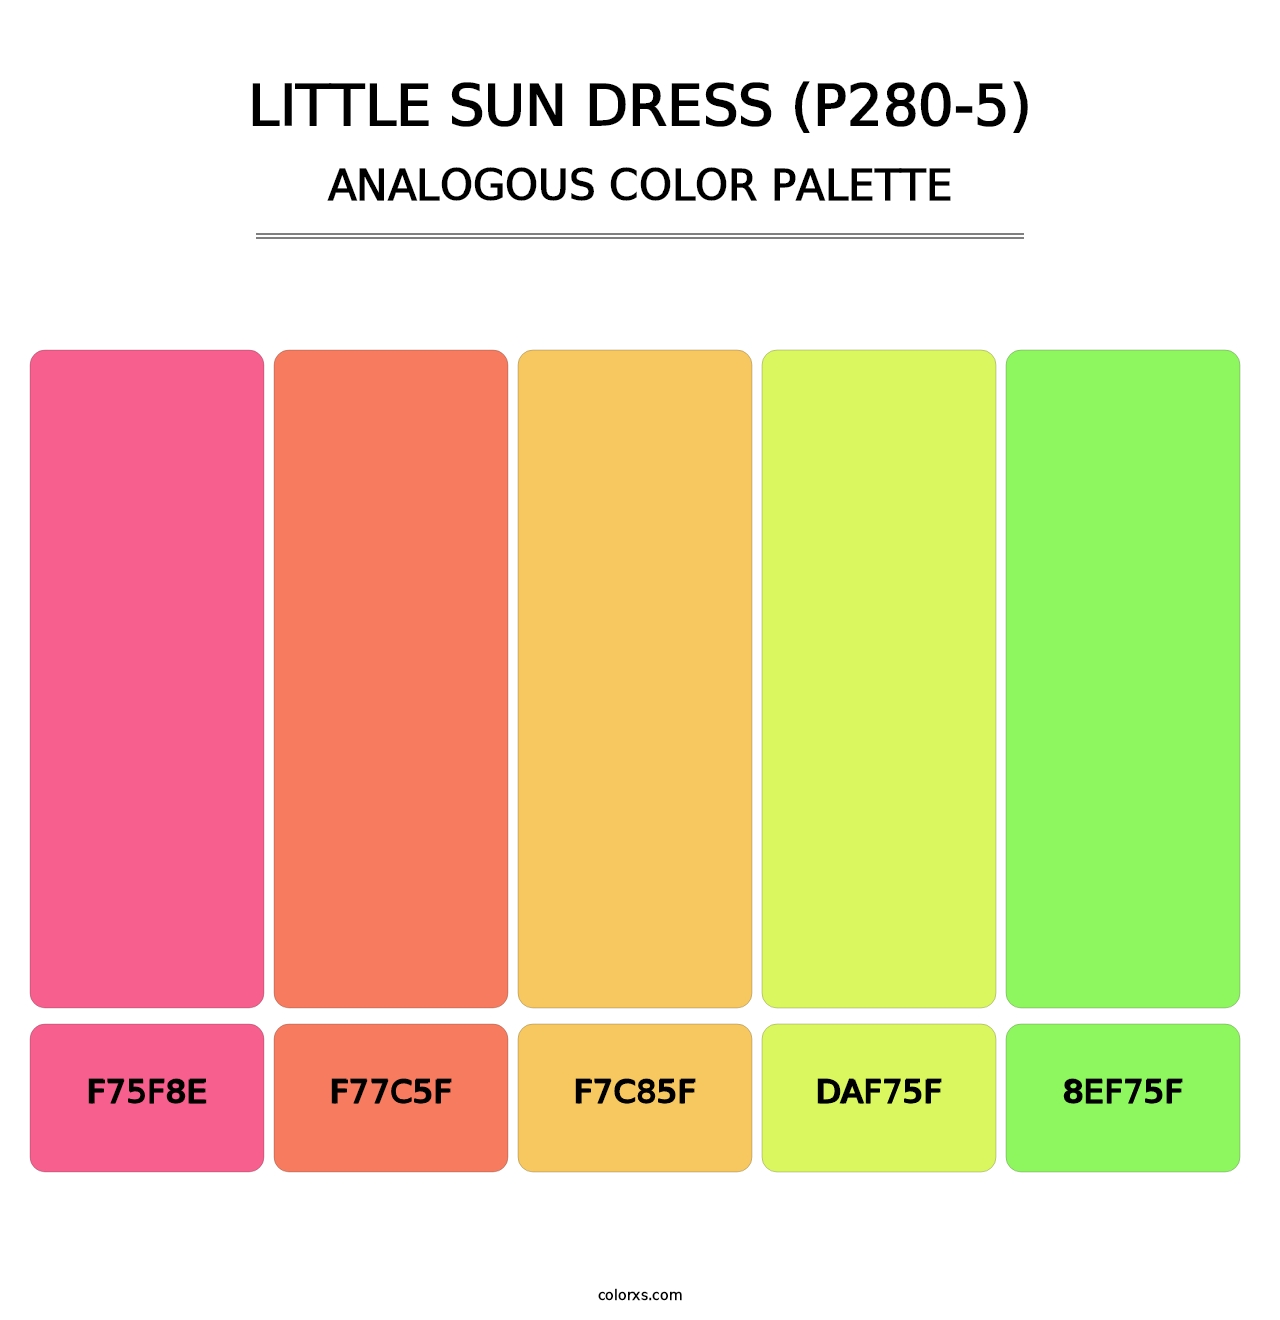 Little Sun Dress (P280-5) - Analogous Color Palette